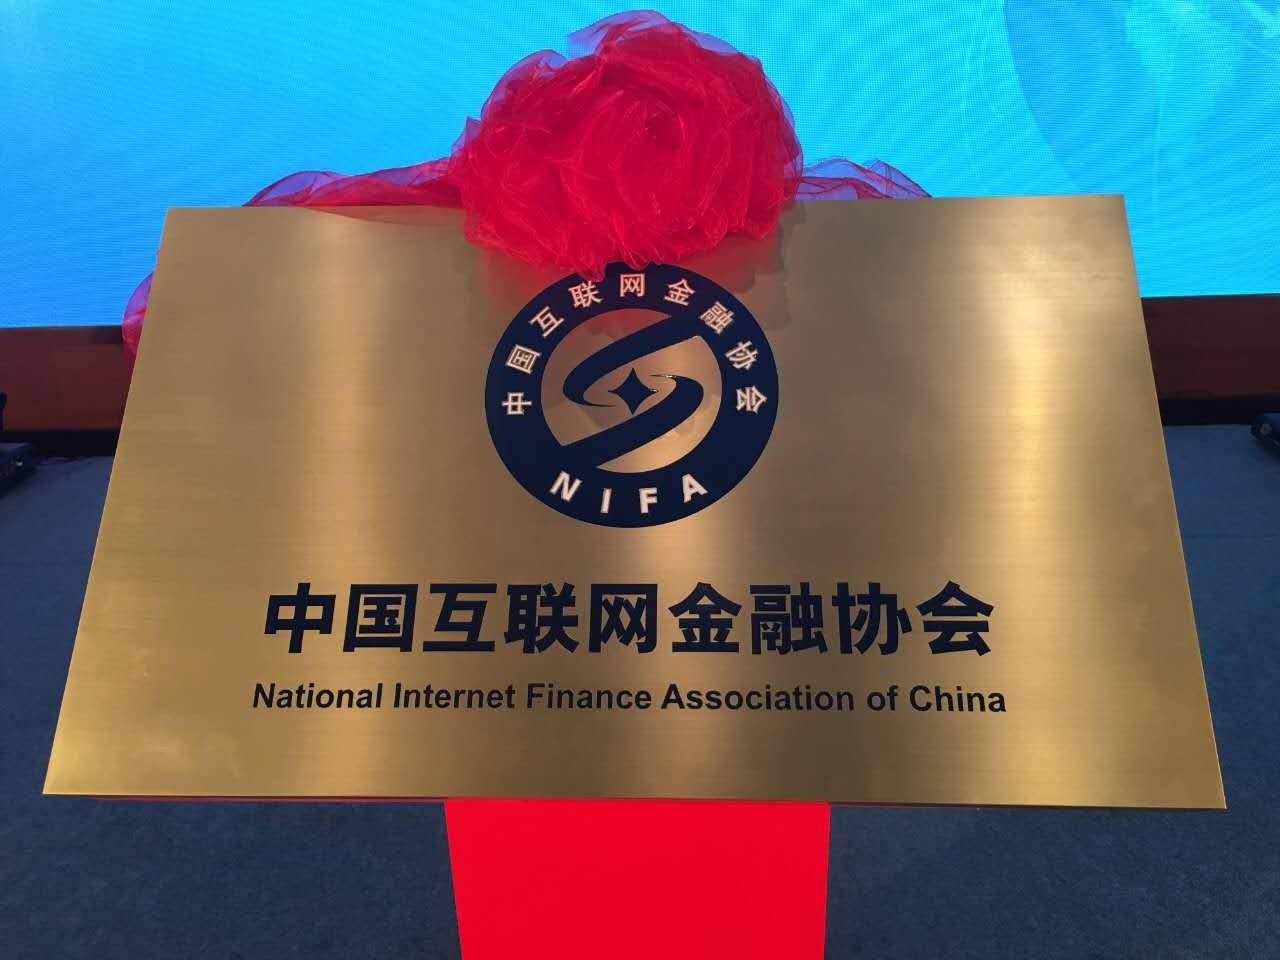 推广 | 民信公司成为中国互联网金融协会首批会